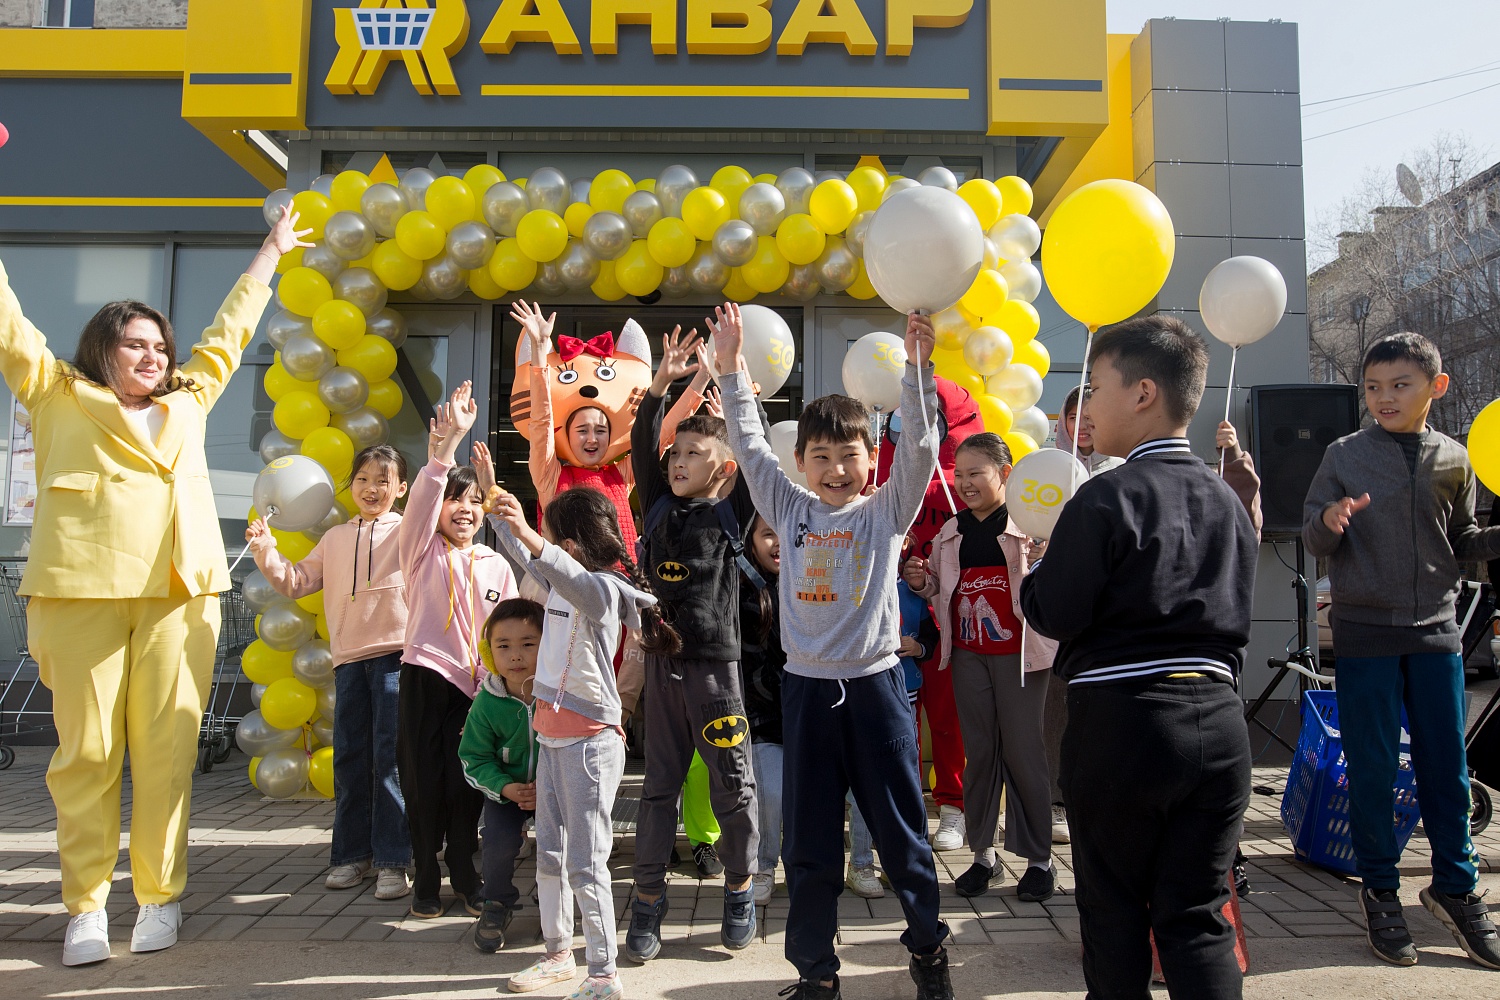 Открытие обновленного супермаркета "Анвар" в Авиагородке. г.Актобе.